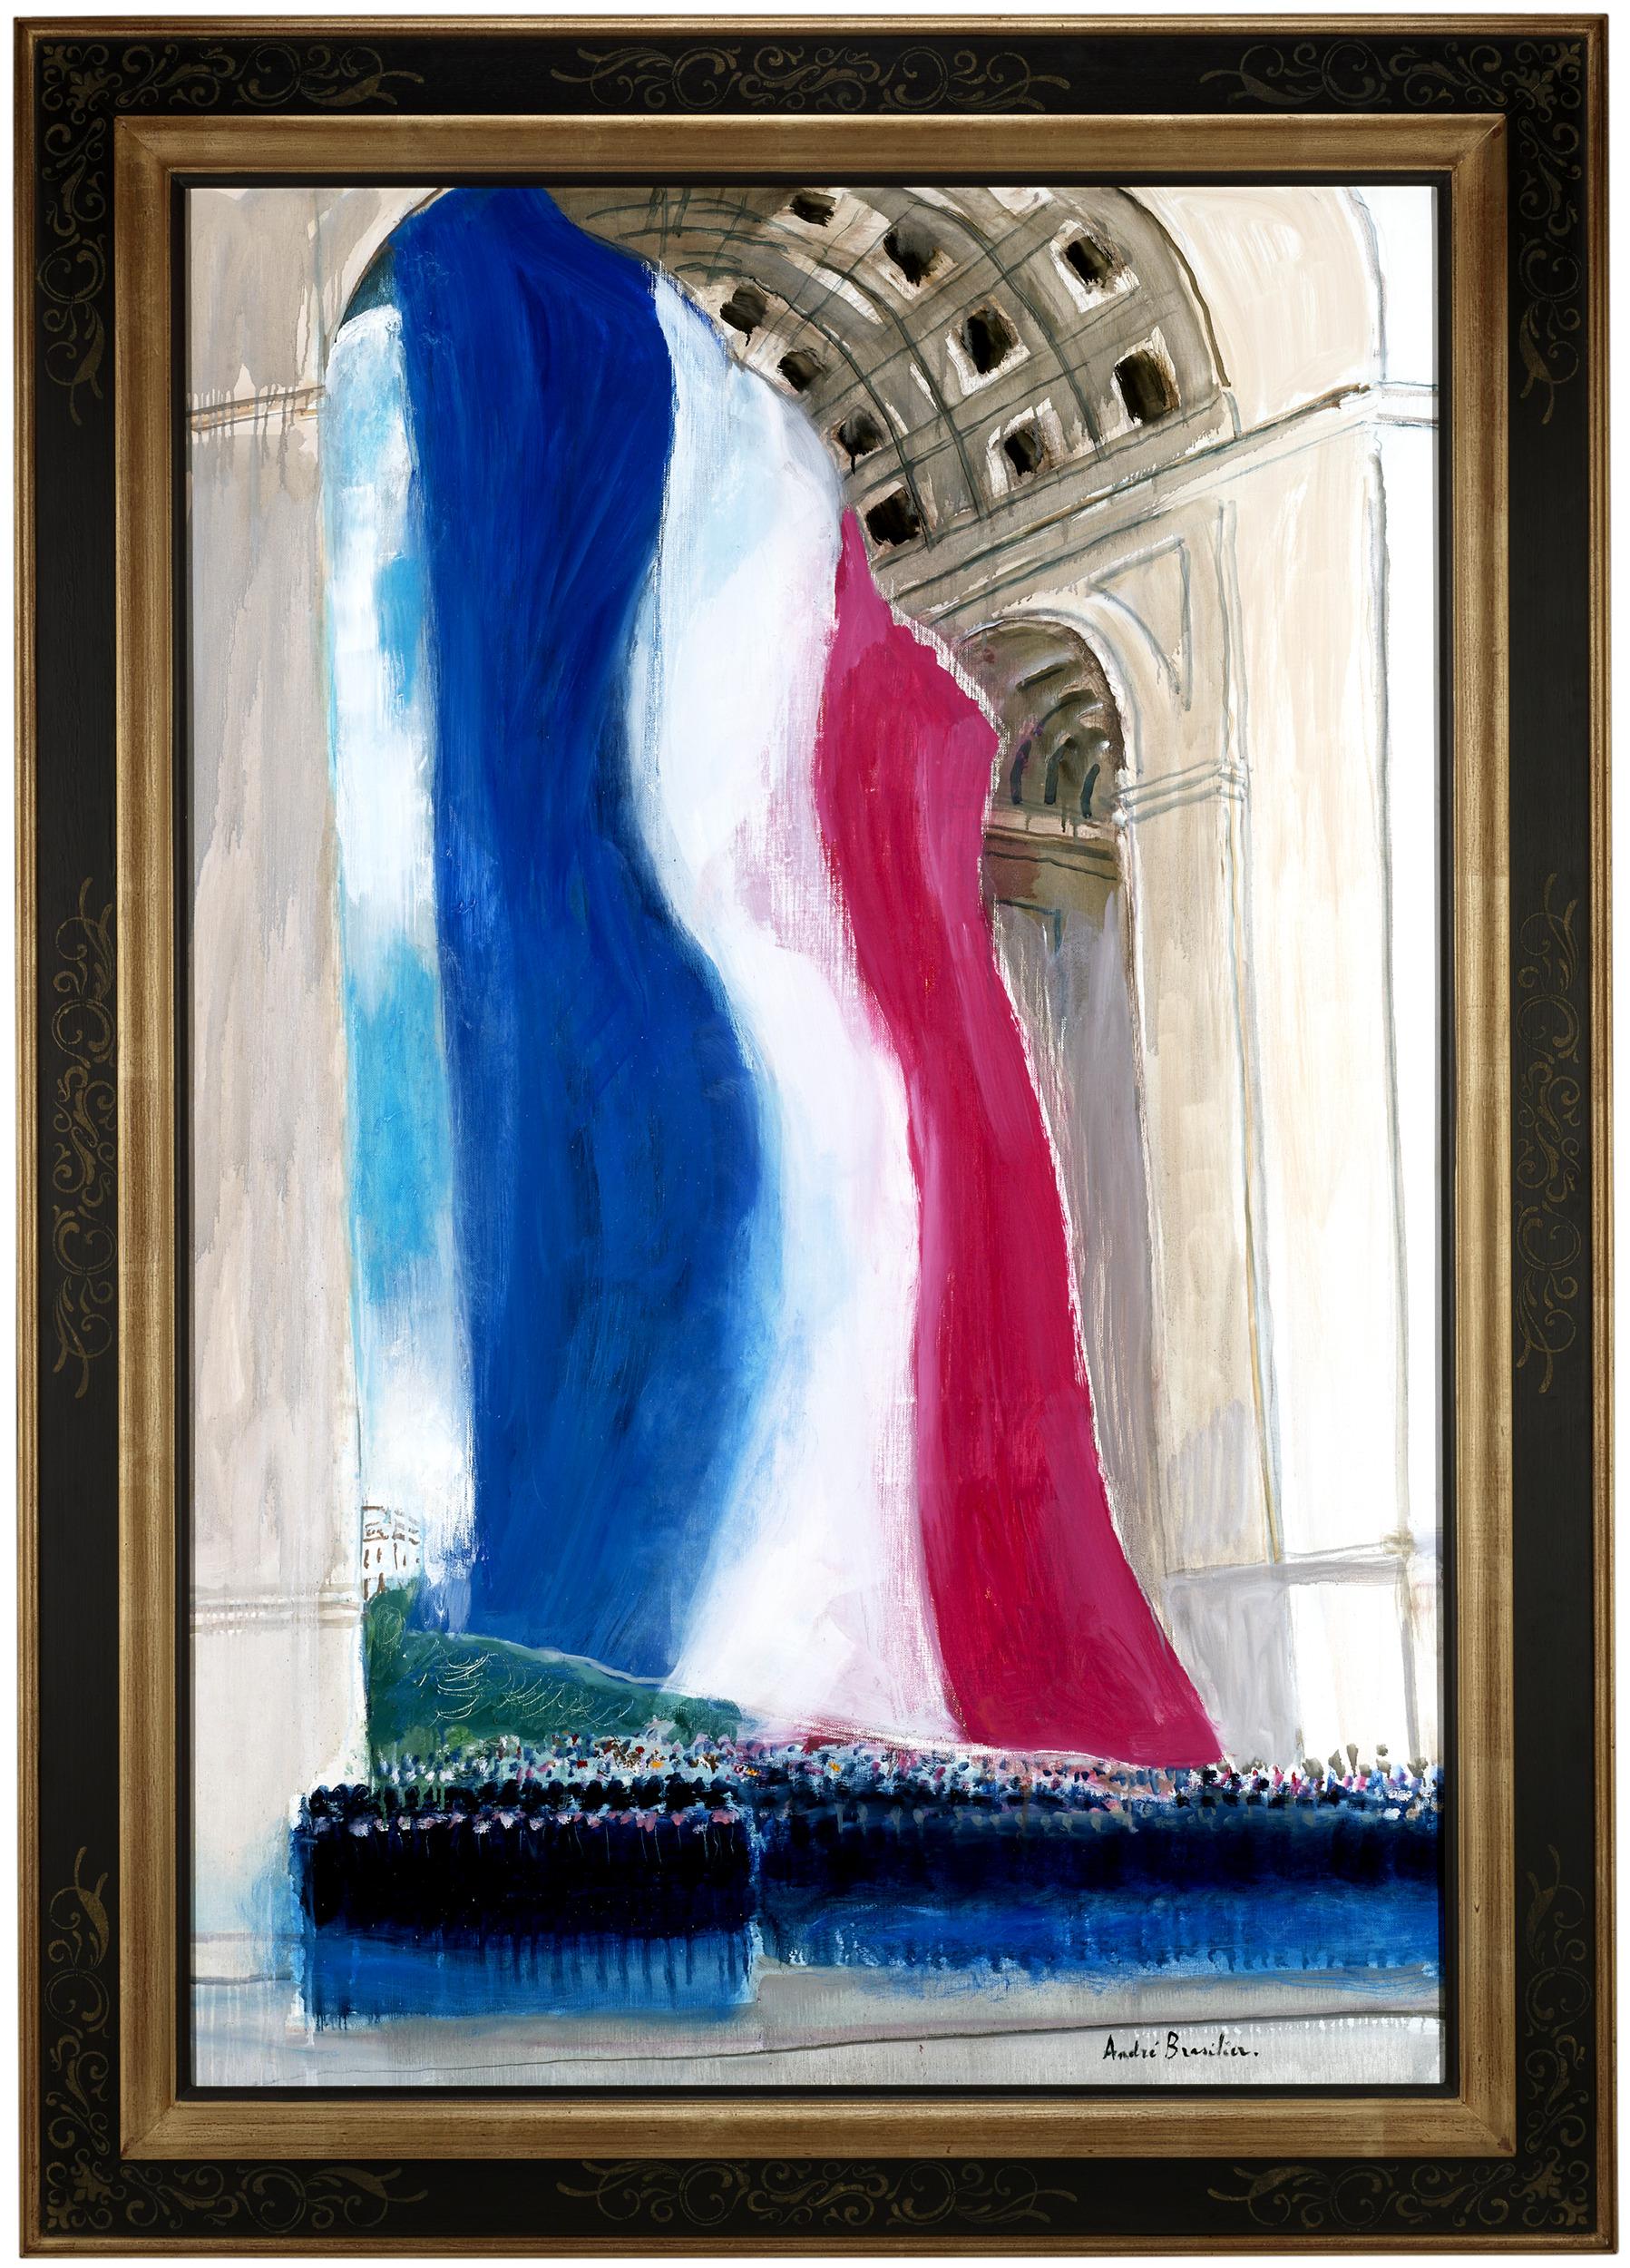 L'Arc de triomphe - Painting de André Brasilier